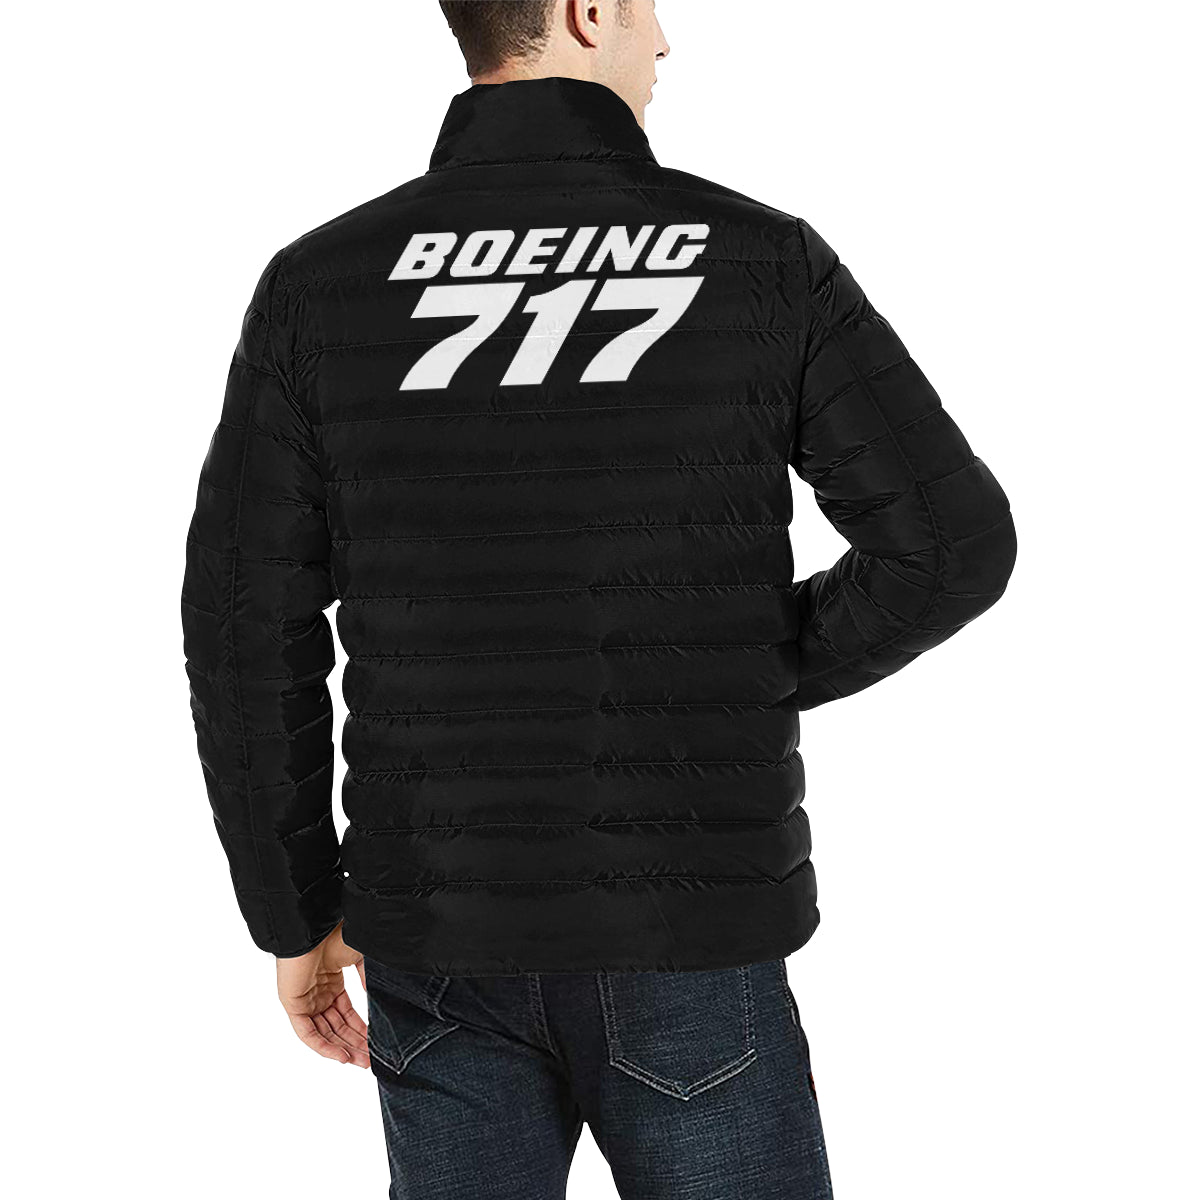 BOEING 717 Men's Stand Collar Padded Jacket e-joyer